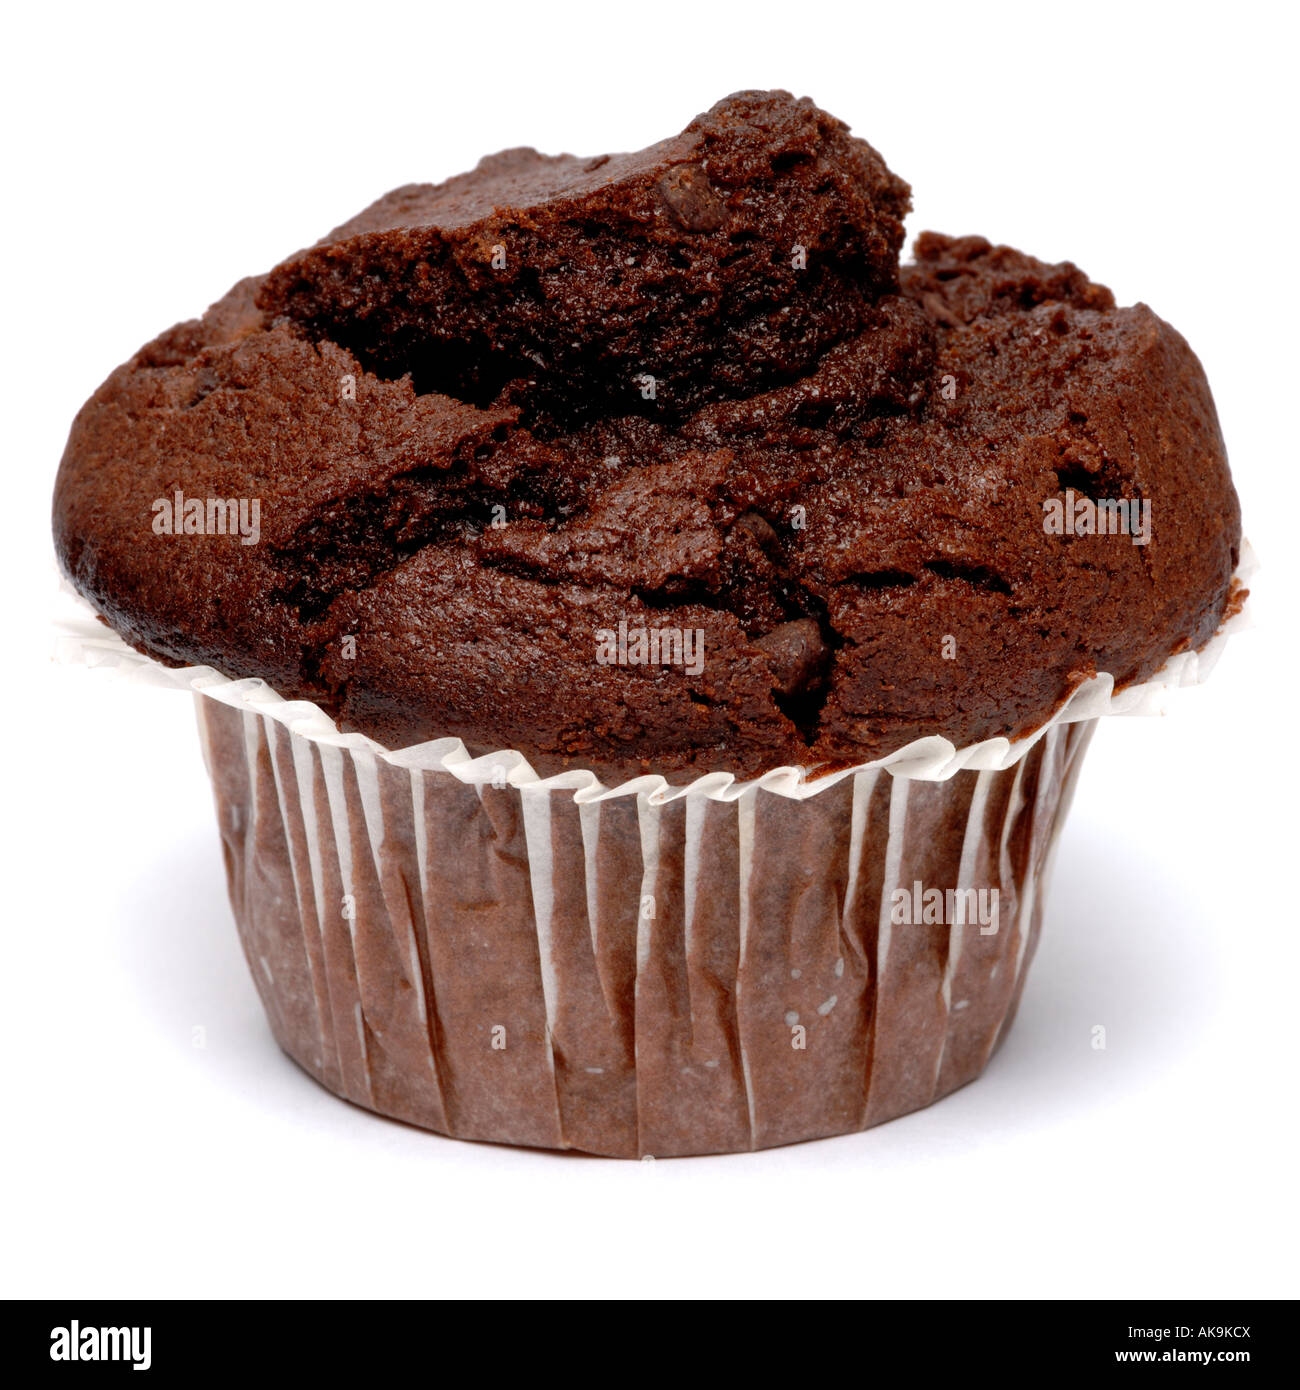 Chocolate muffin Stock Photo